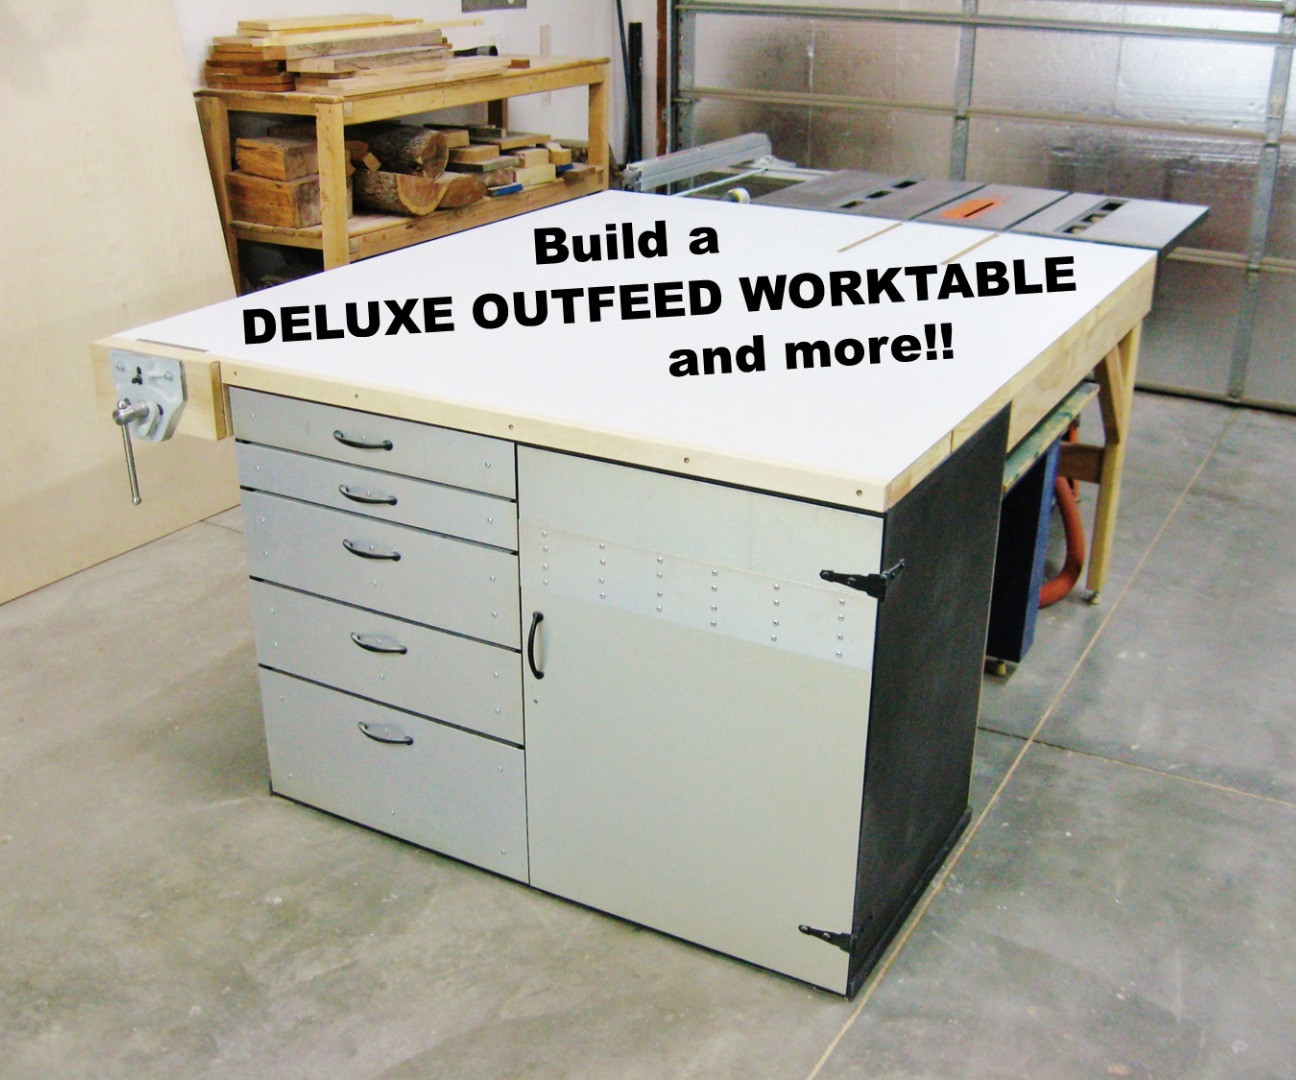 Organize Garage Workshop
 Project ideas to organize your garage workshop